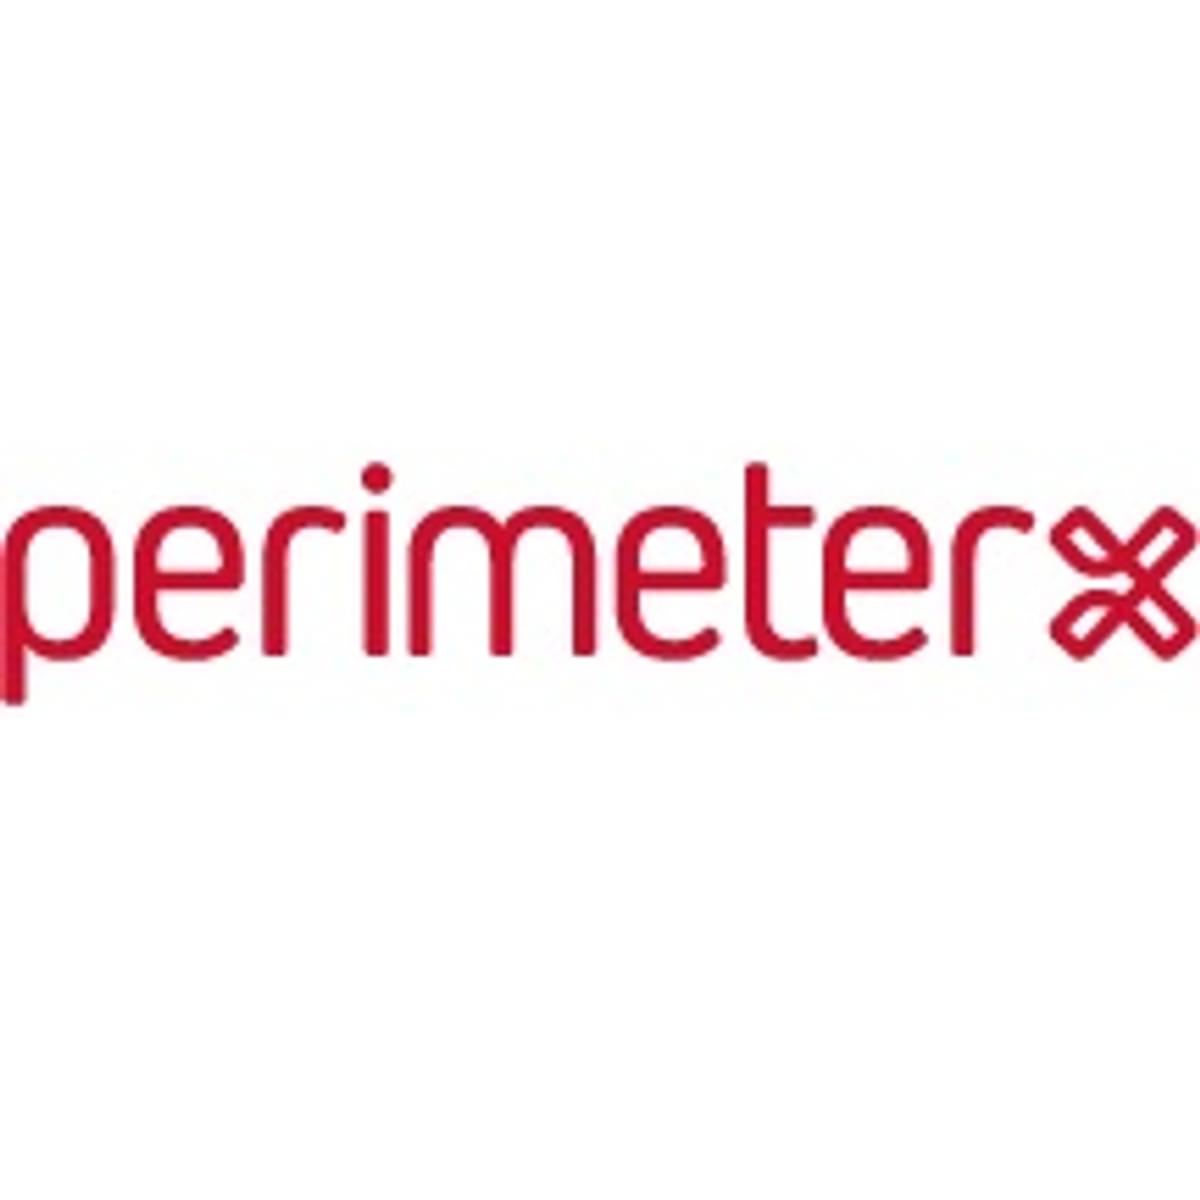 PerimeterX haalt kapitaal op voor uitbouw applicatie security business image